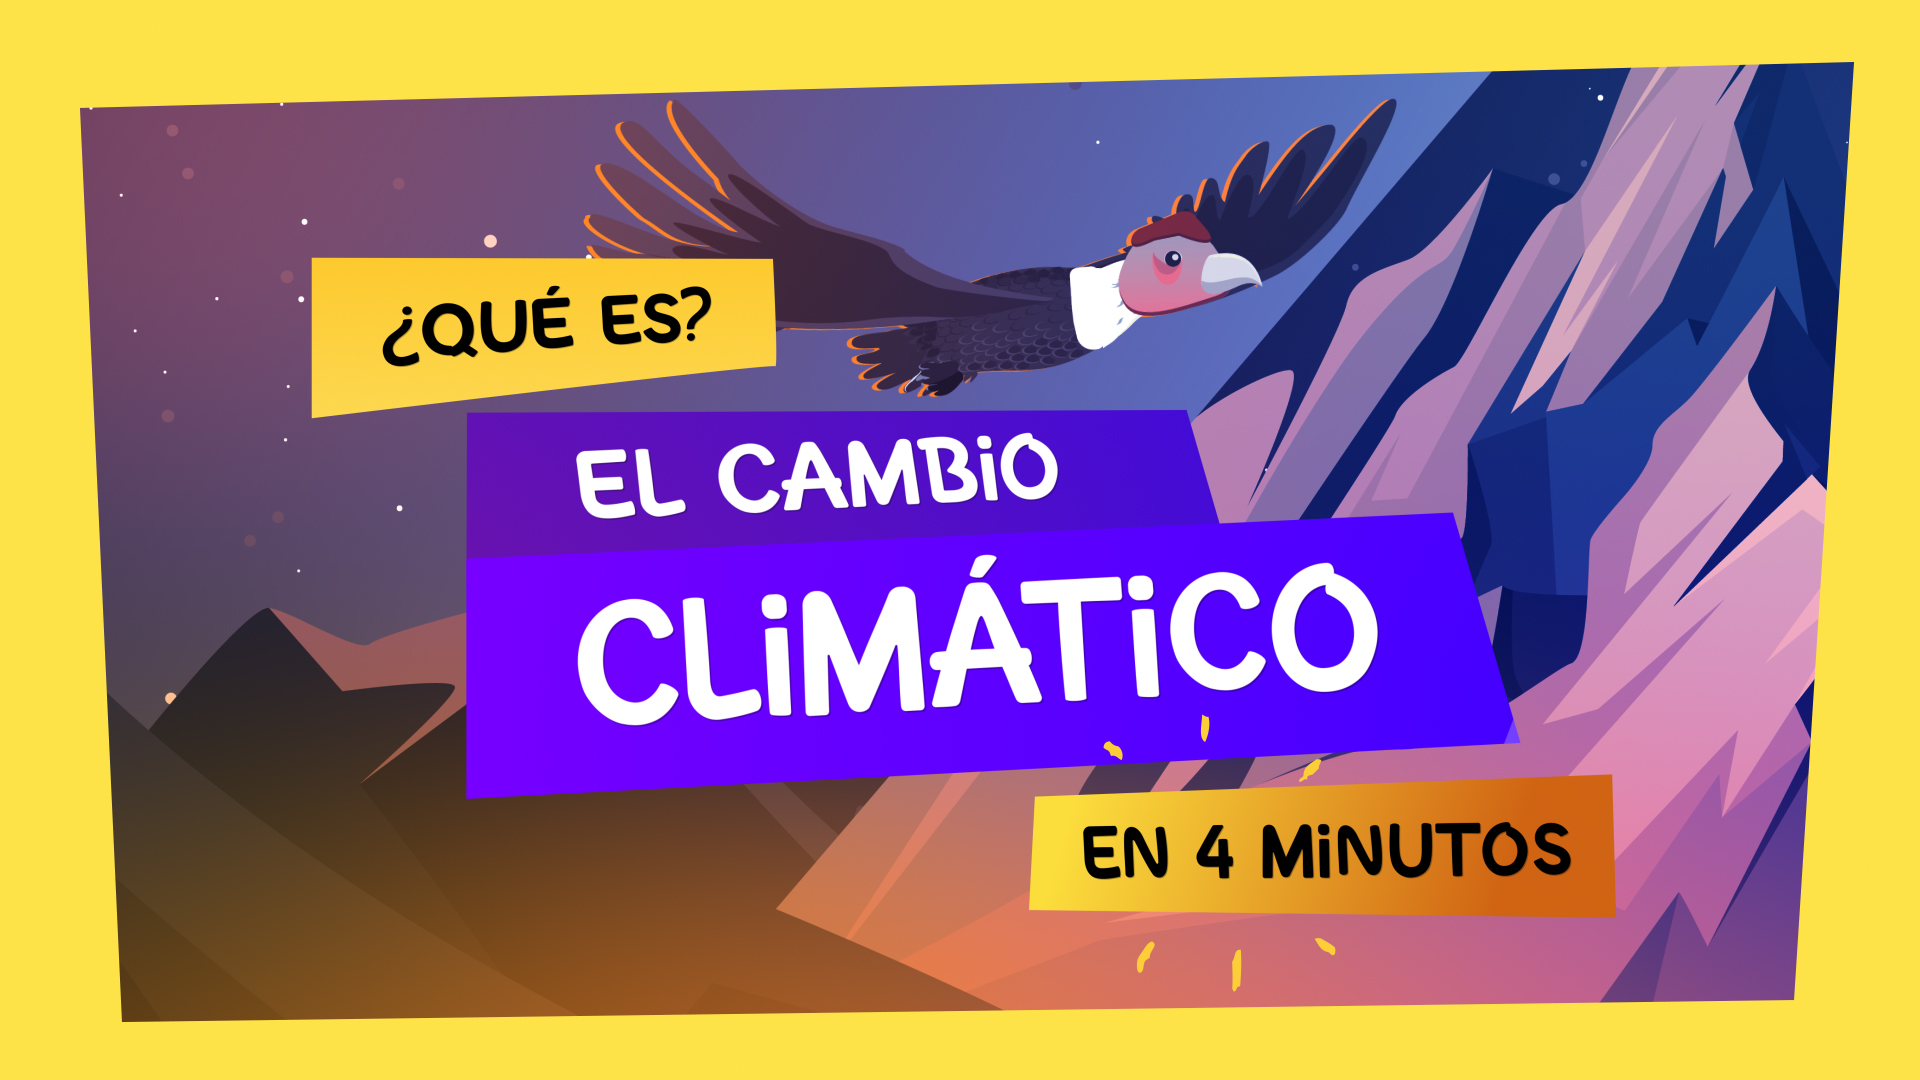 "¿Qué es el cambio climático en 4 minutos? Con una ilustración de un Cóndor detrás.